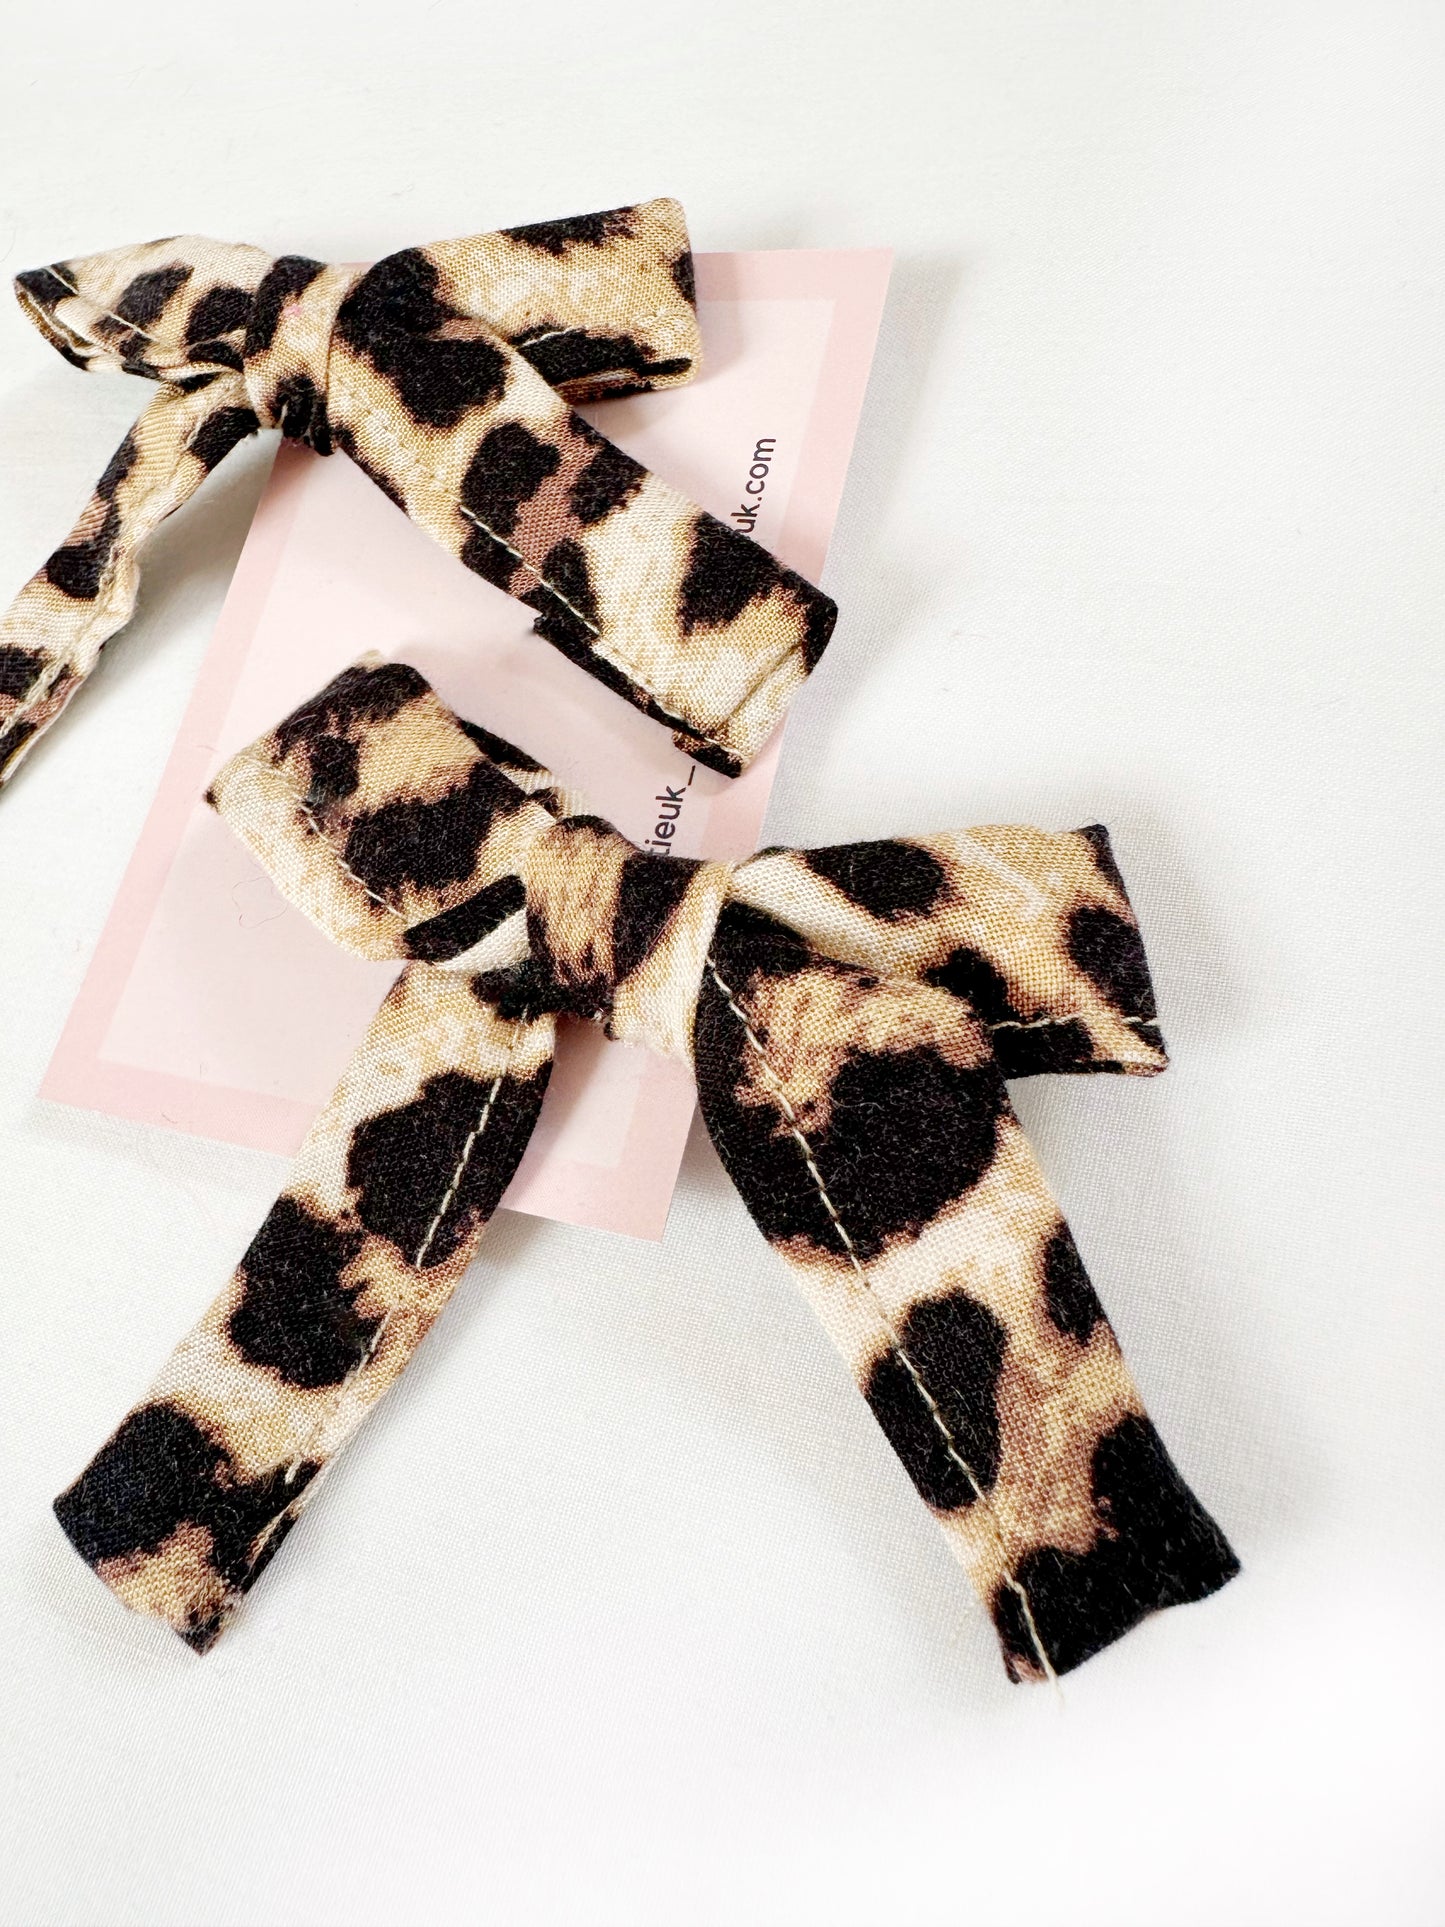 Bonnie mini hair bow set in leopard print